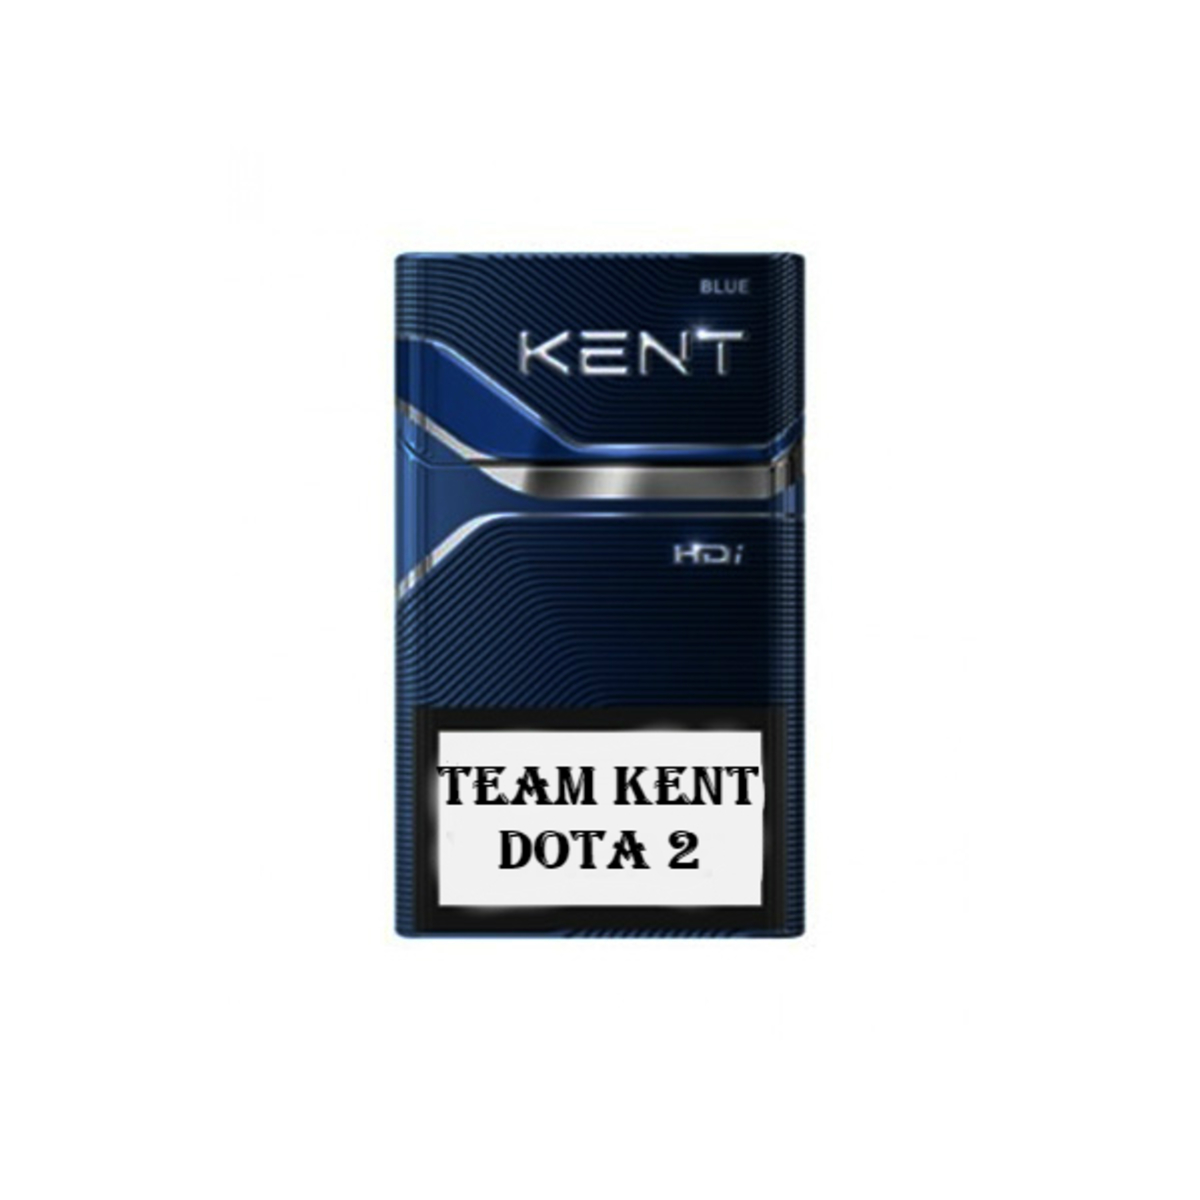 Кент это человек. Сигареты Кент 4 компакт. Сигареты Кент Blue. Кент компакт Блю. Сигареты Kent HDI Blue.